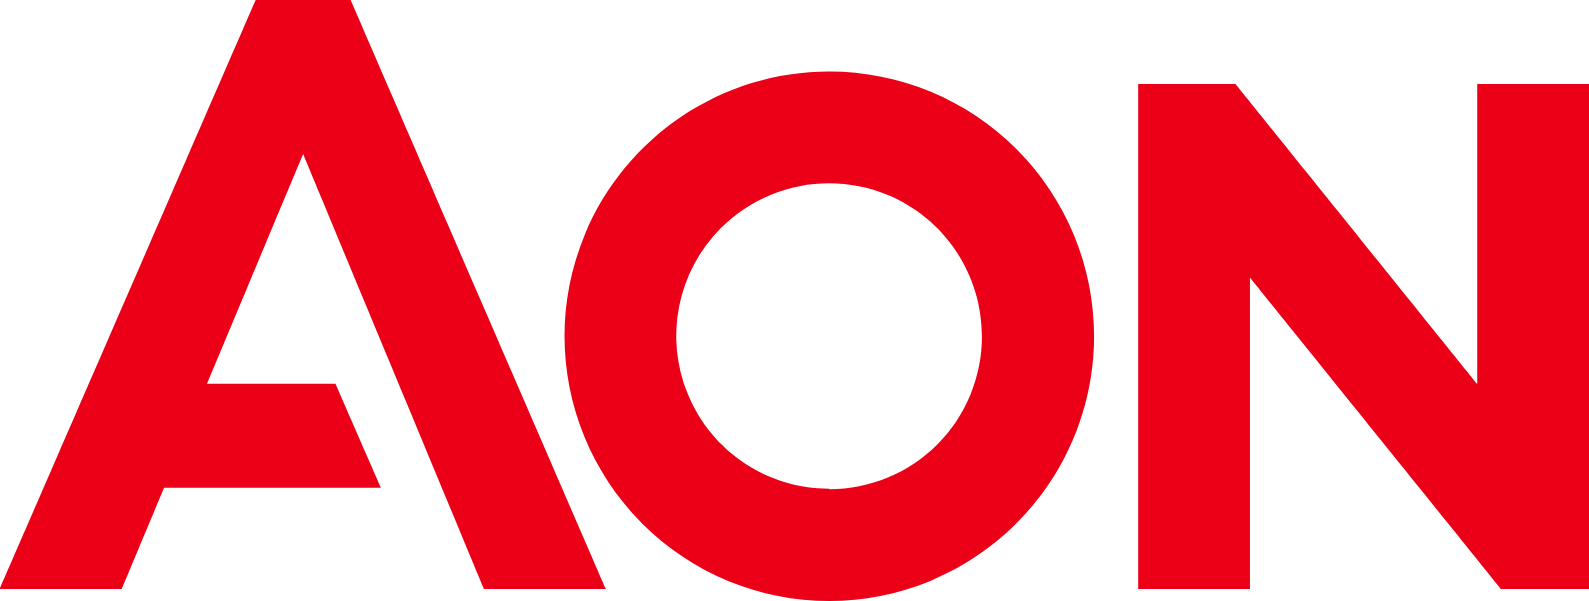 Aon logo (PNG transparent)